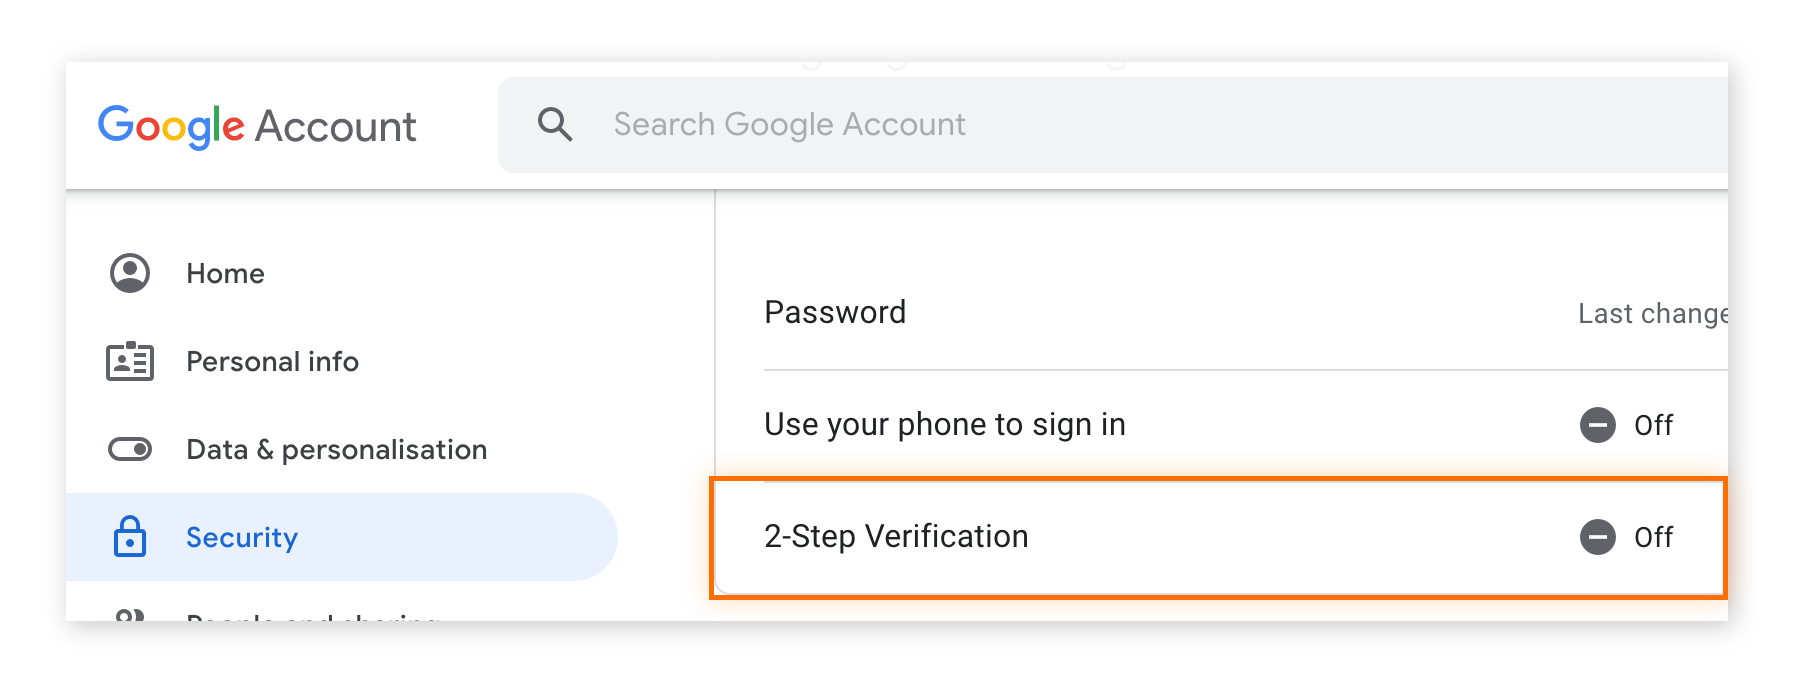 Resaltado de la verificación en dos pasos en la configuración de la cuenta de Google